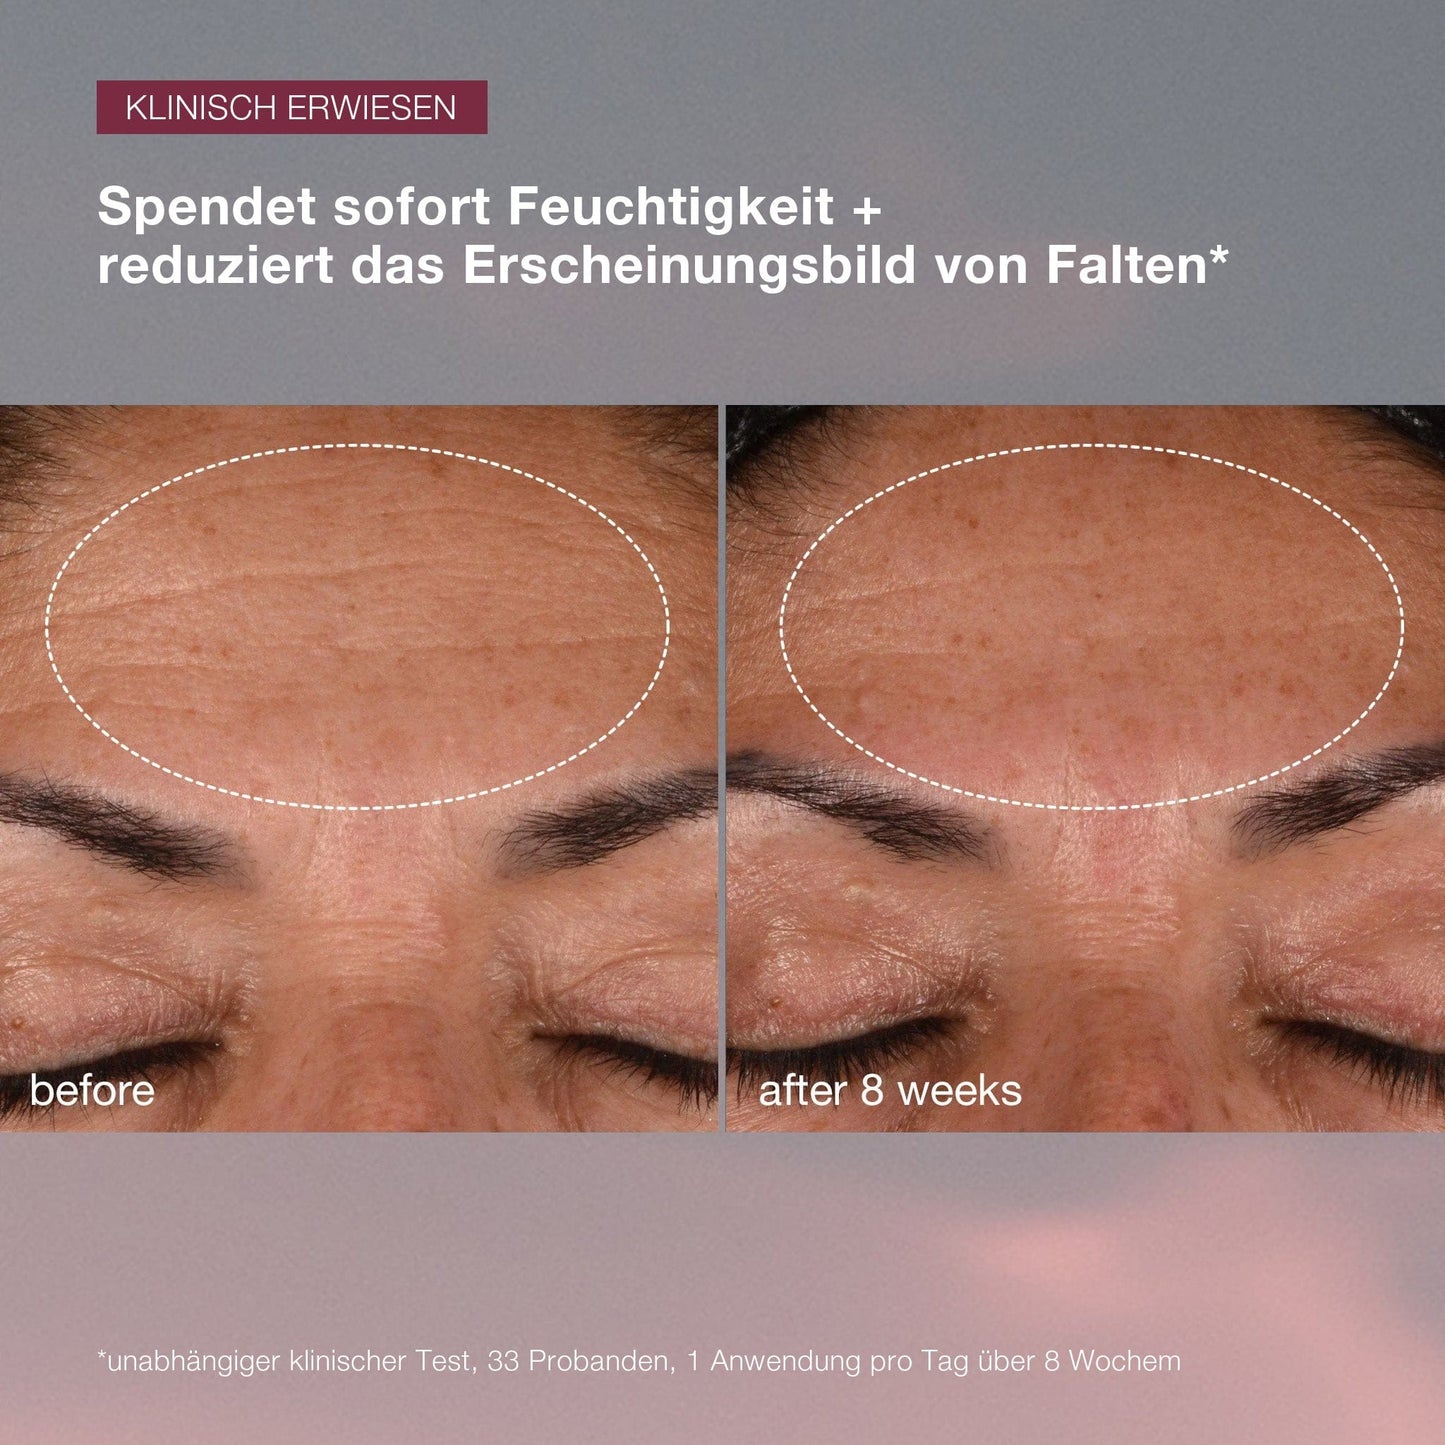 Vorher- und Nachher-Bilder einer Stirn, die eine Verringerung der Faltenbildung nach 8 Wochen Dynamic Skin Recovery SPF50 zeigen | Tagespflege mit SPF-Hautpflegebehandlung.